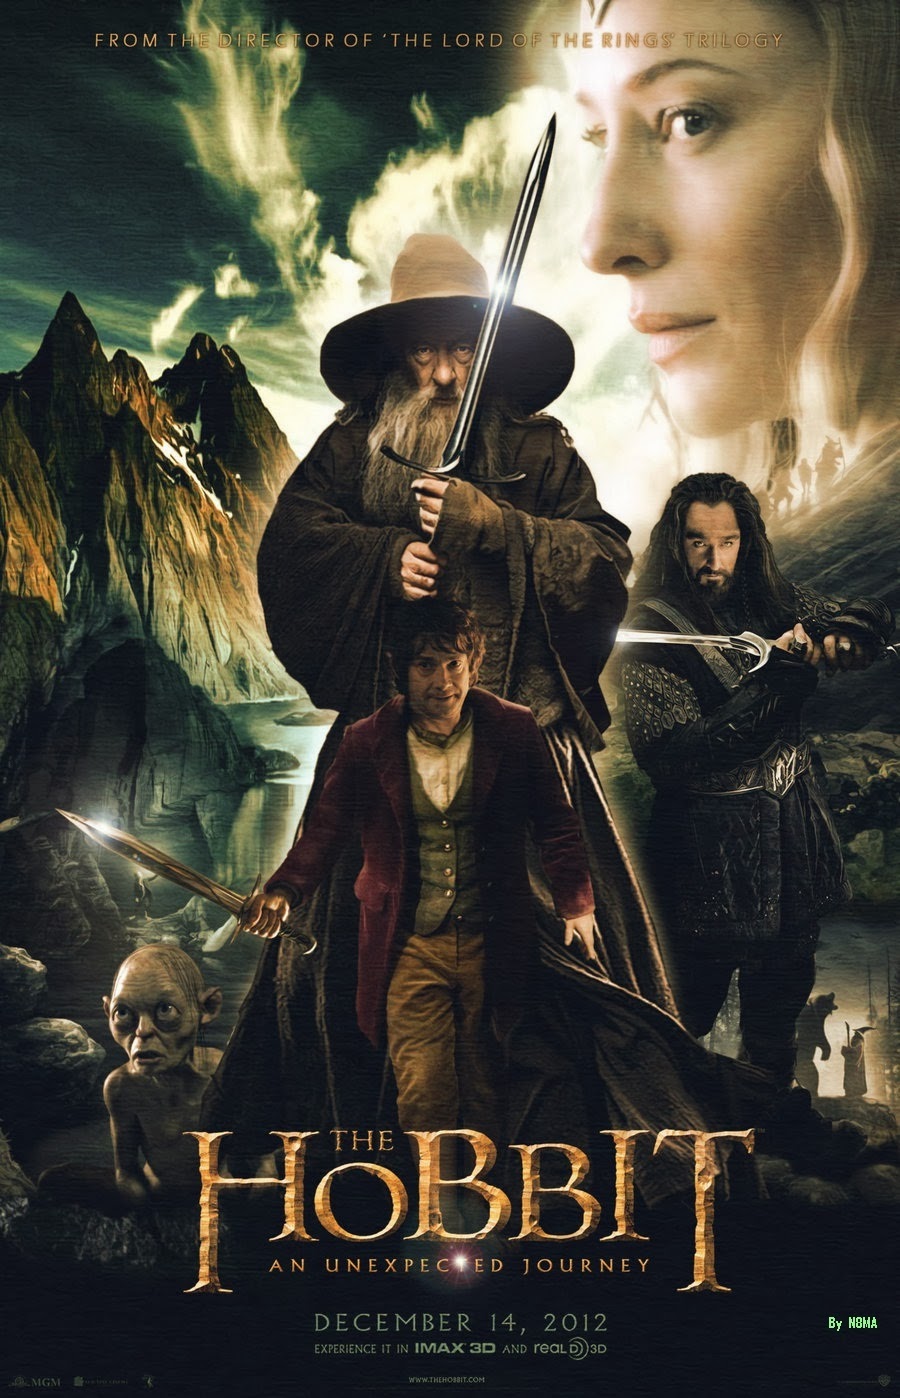 El Hobbit 2012 Imdb